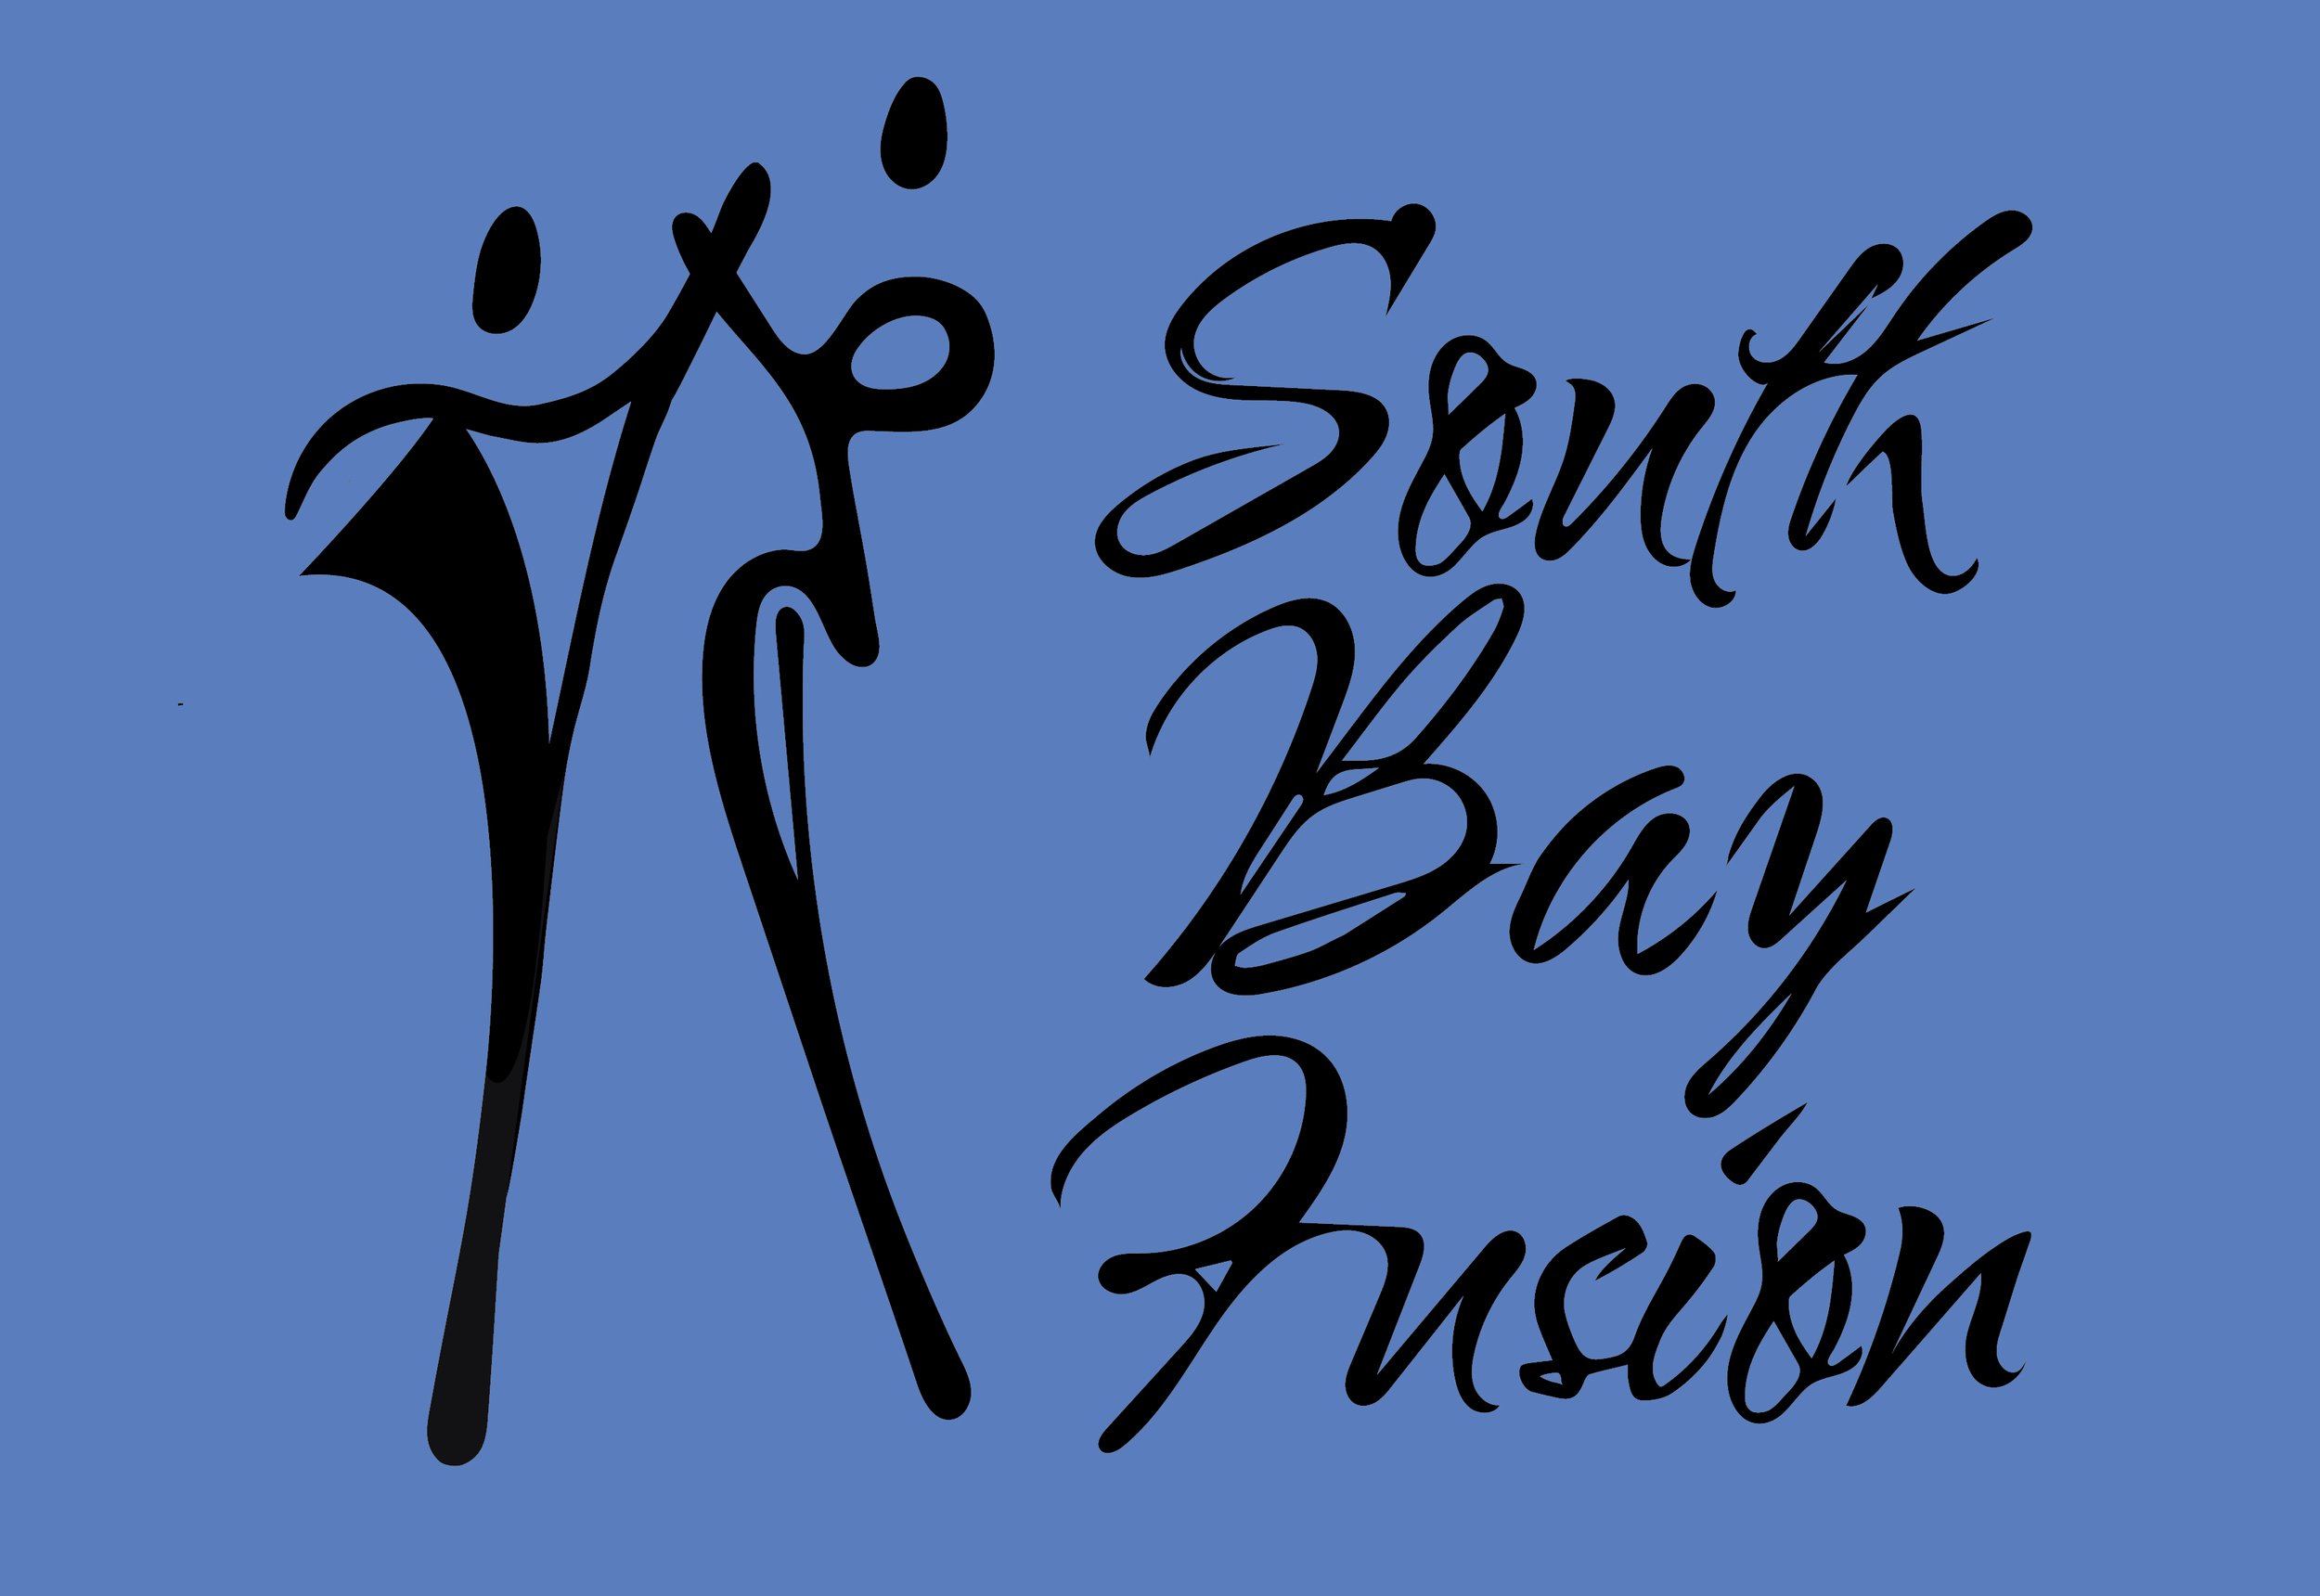 South Bay Fusion Logo Redesign 